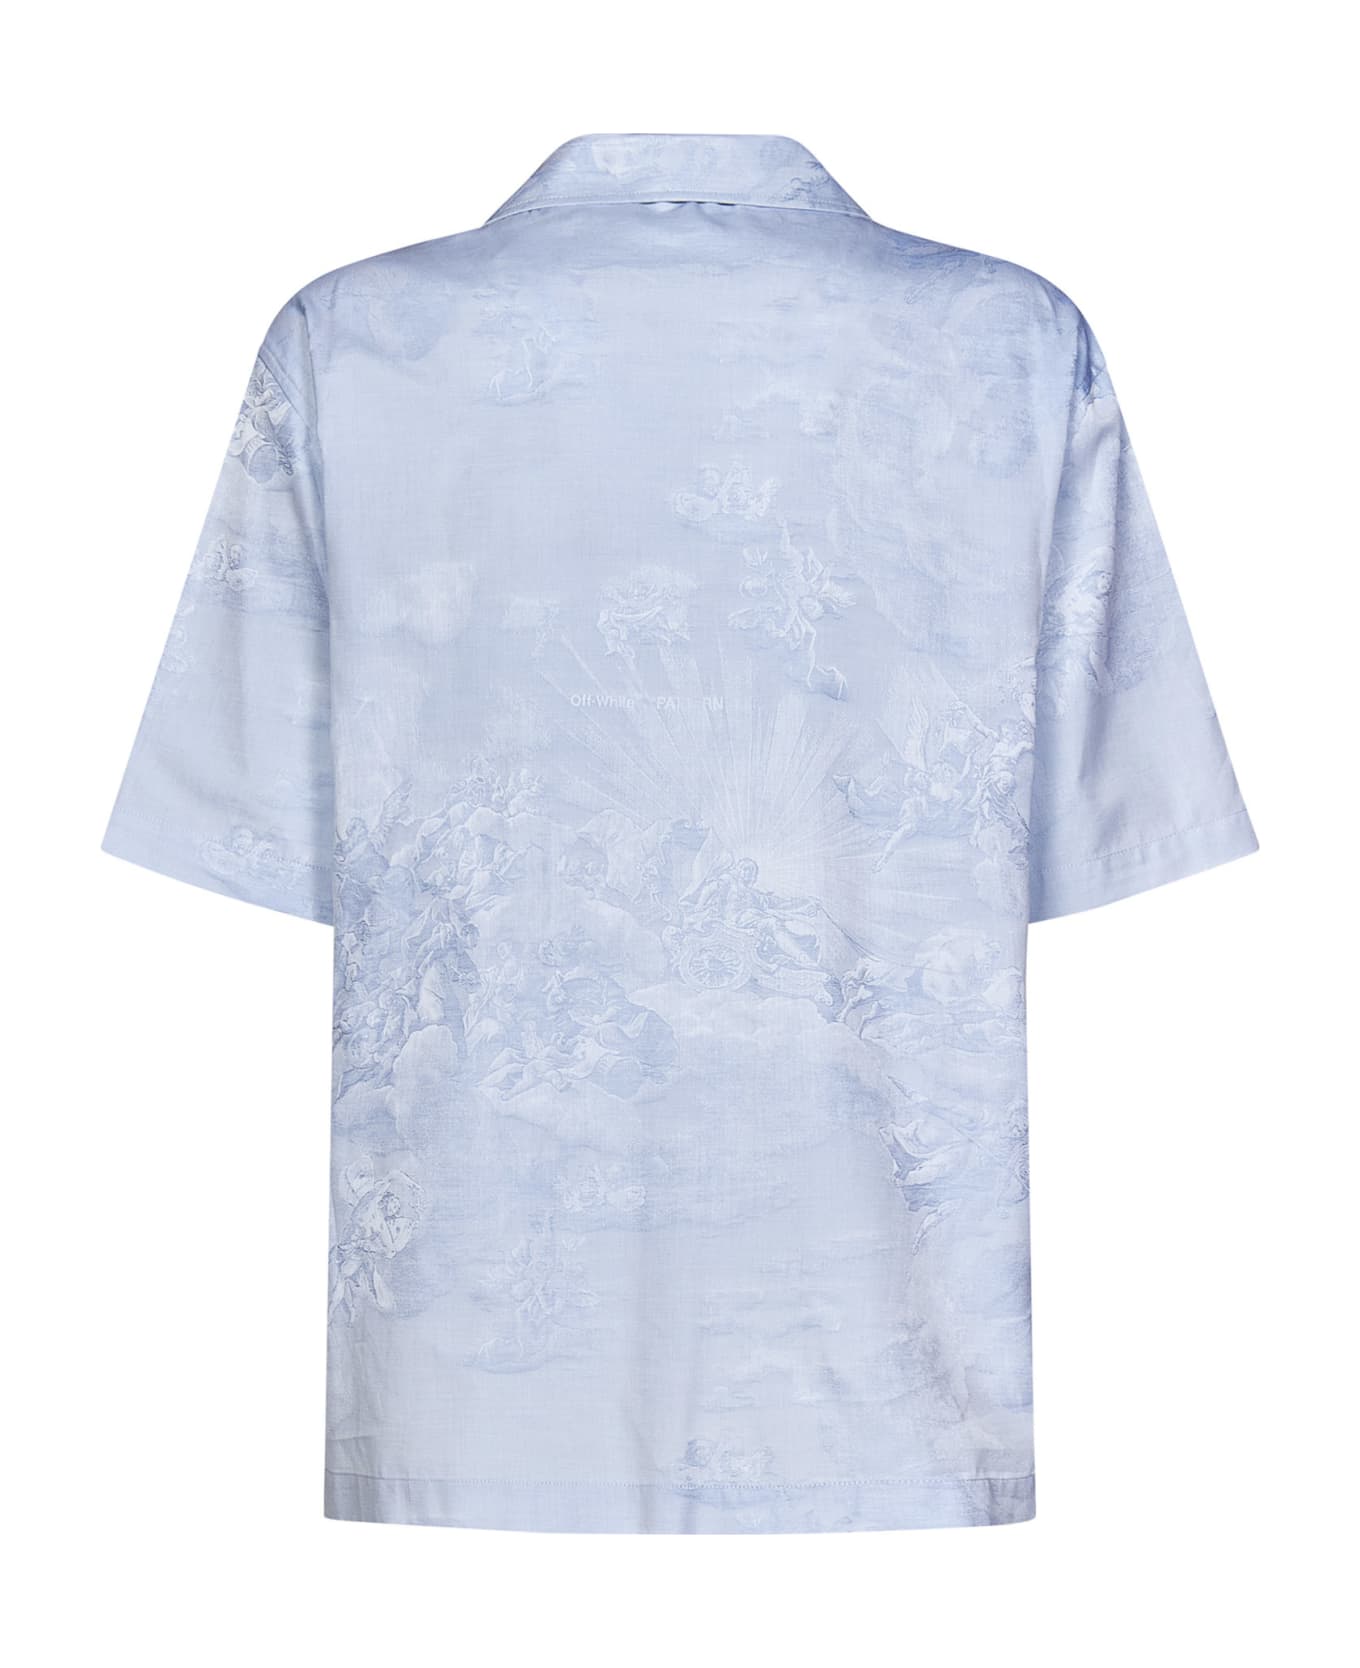 Off-White Shirt - Light blue